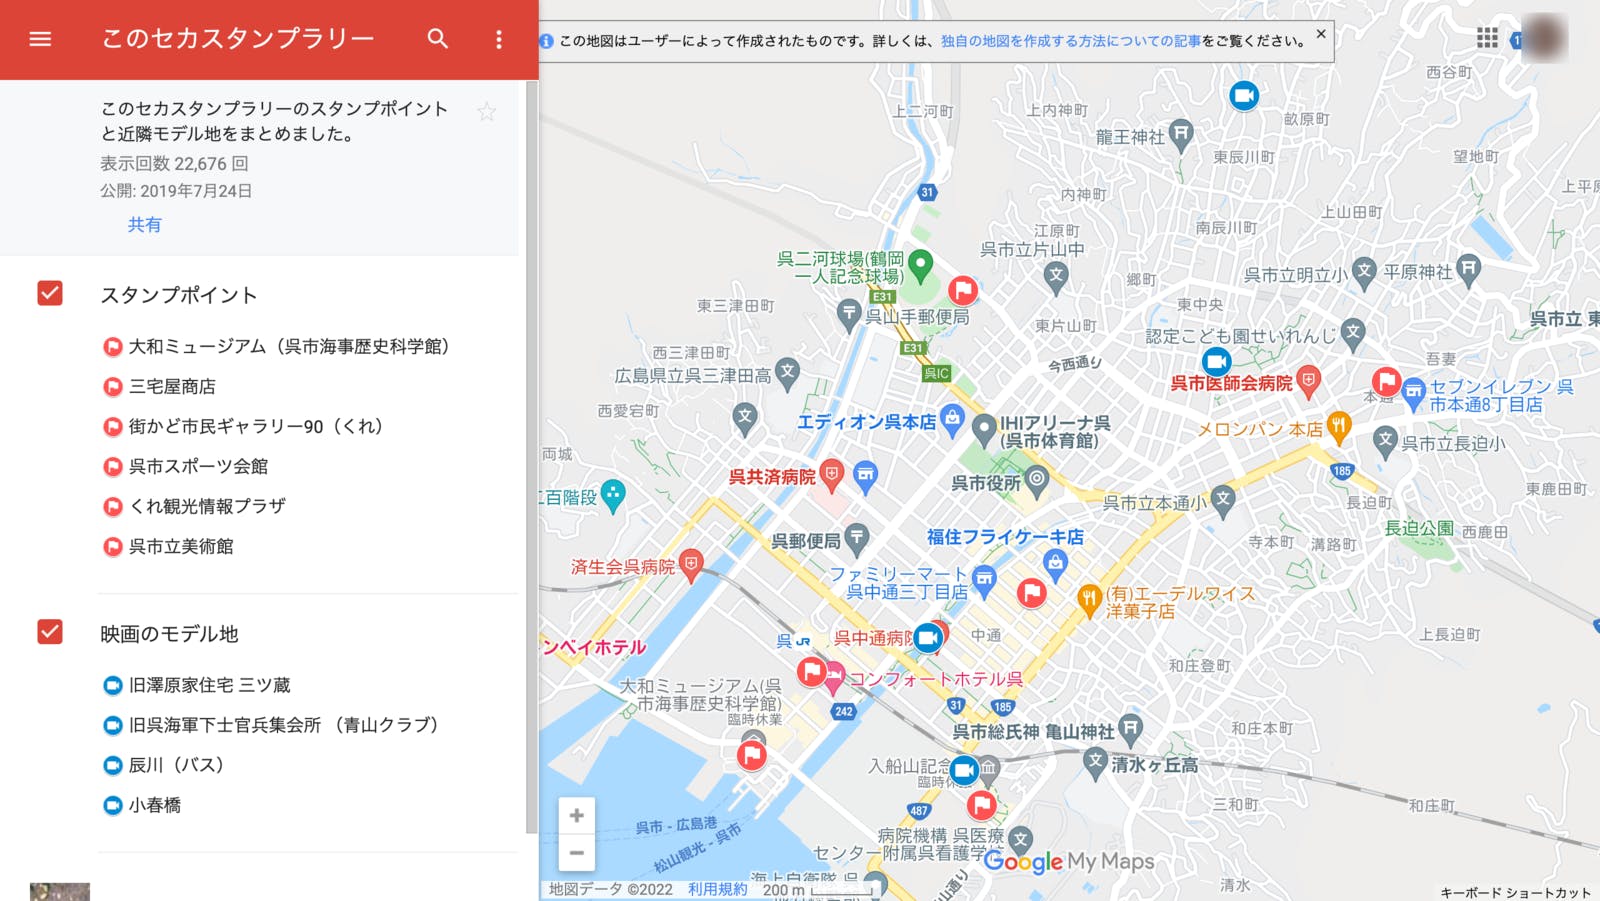 呉市の「この世界の片隅で」スタンプラリーのためにGoogleマイマップに作成された地図